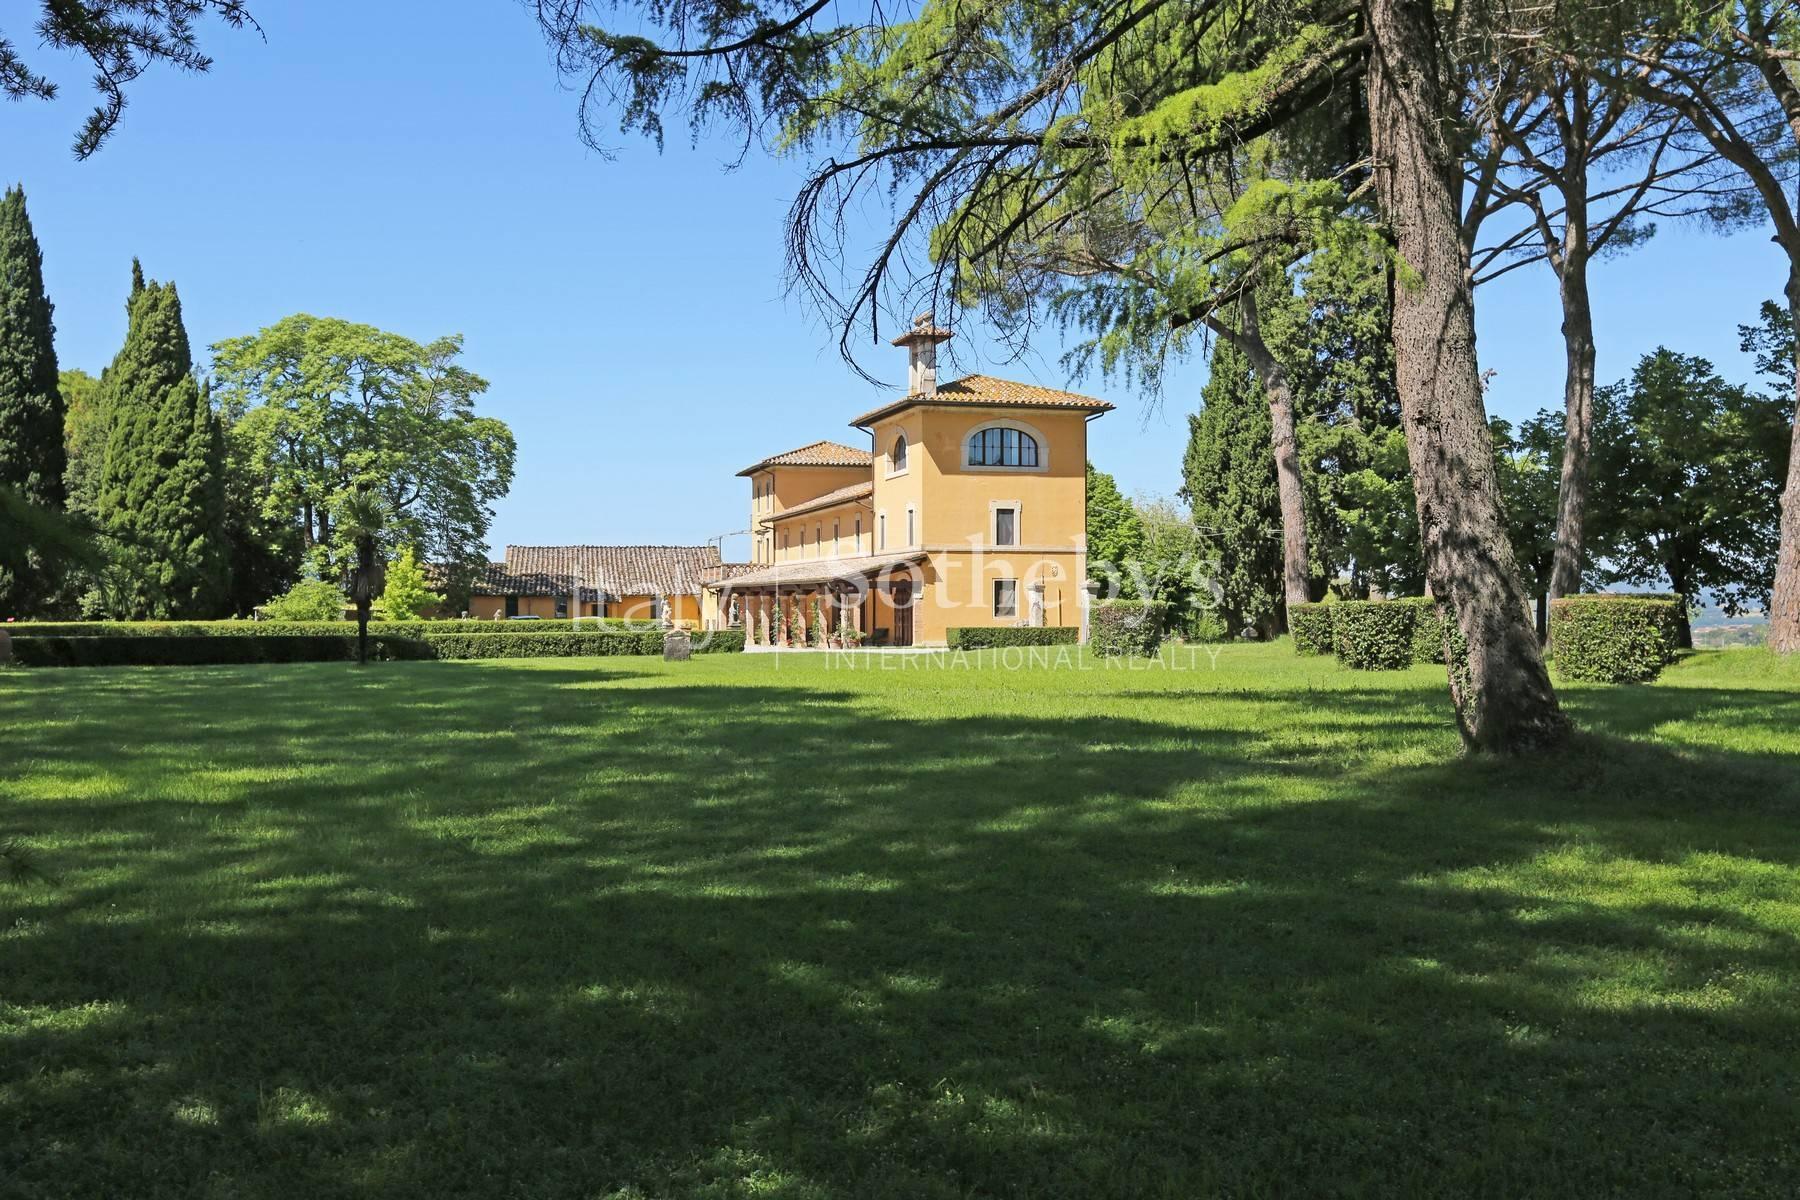 Magnifica Villa storica con giardino all' italiana in Umbria - 17